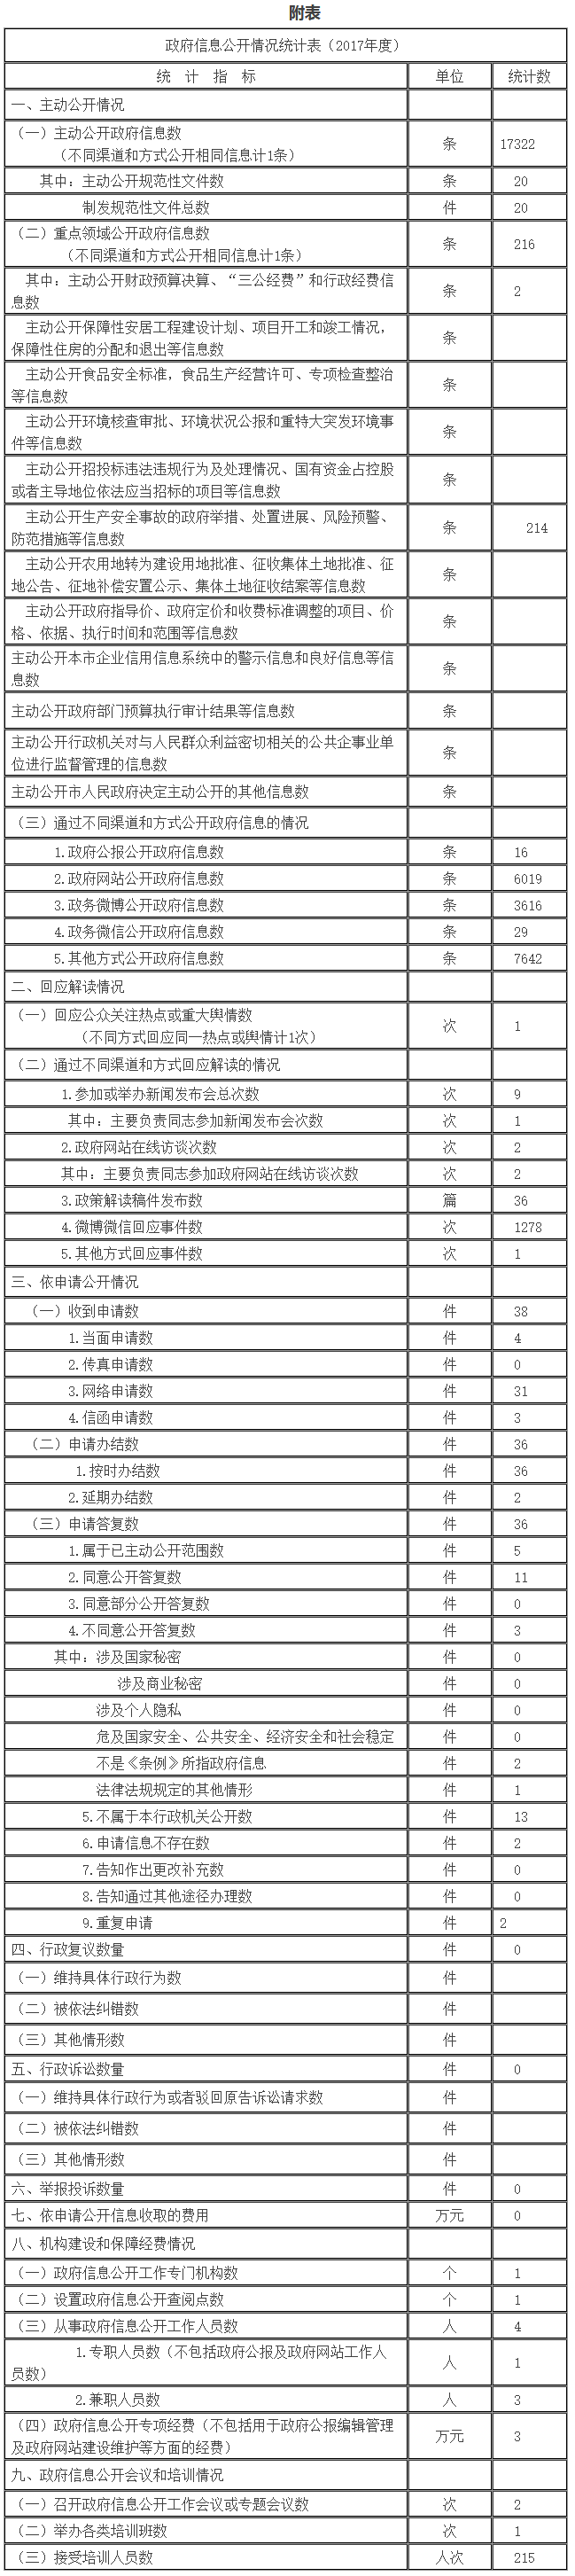 北京市城市管理委員會政府信息公開情況統計表(2017年度)